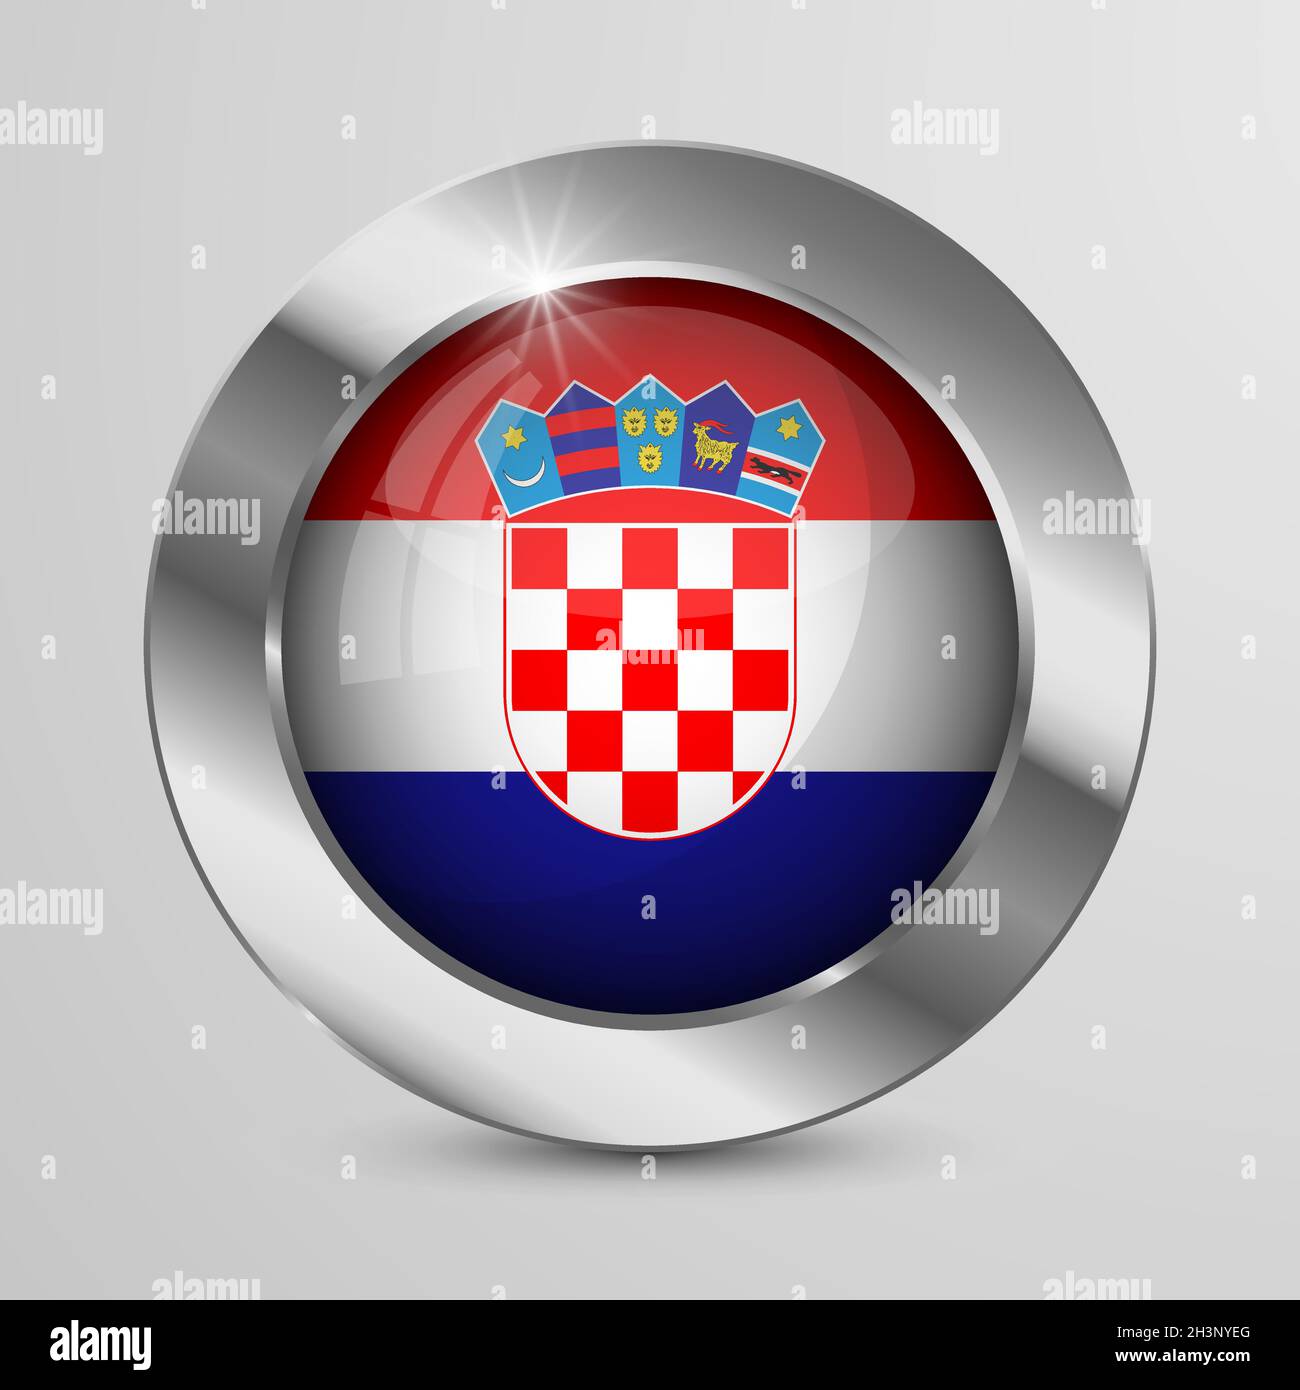 Bouton Patriotic vectoriel EPS10 avec couleurs de drapeau de Croatie.Un élément d'impact pour l'utilisation que vous voulez en faire. Illustration de Vecteur